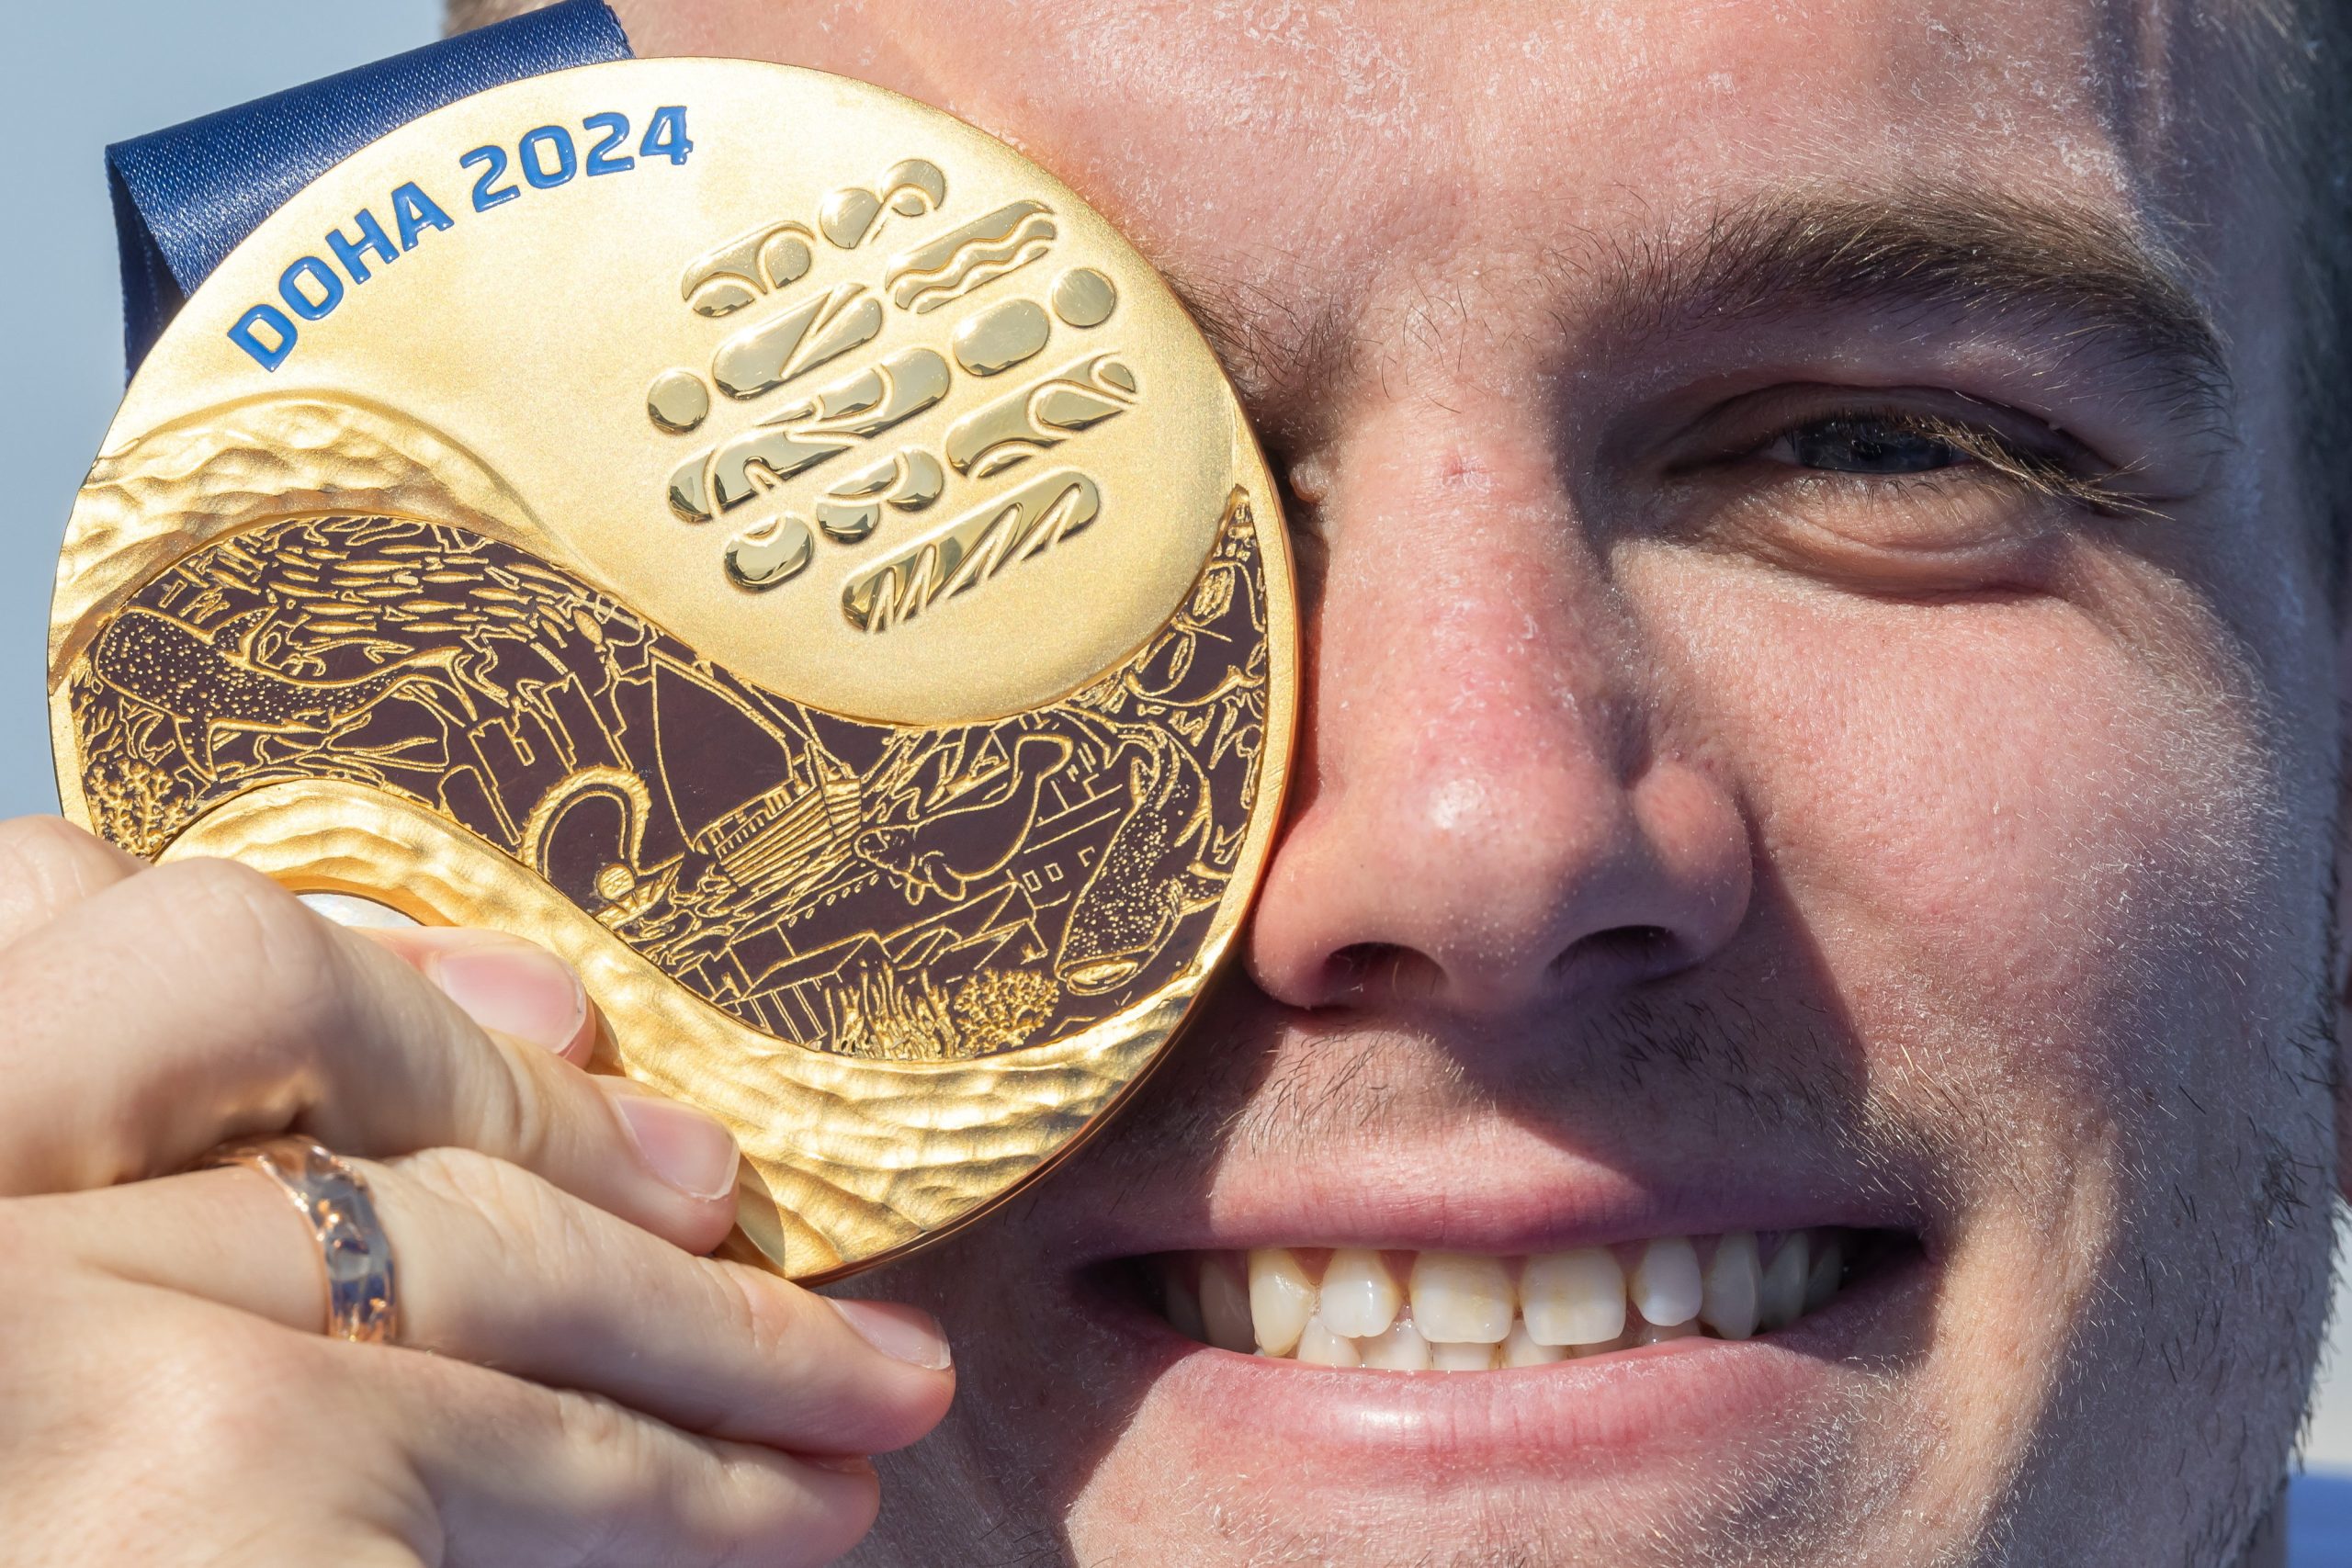 Kristóf Rasovszky holt die erste ungarische Medaille bei der Schwimm-WM